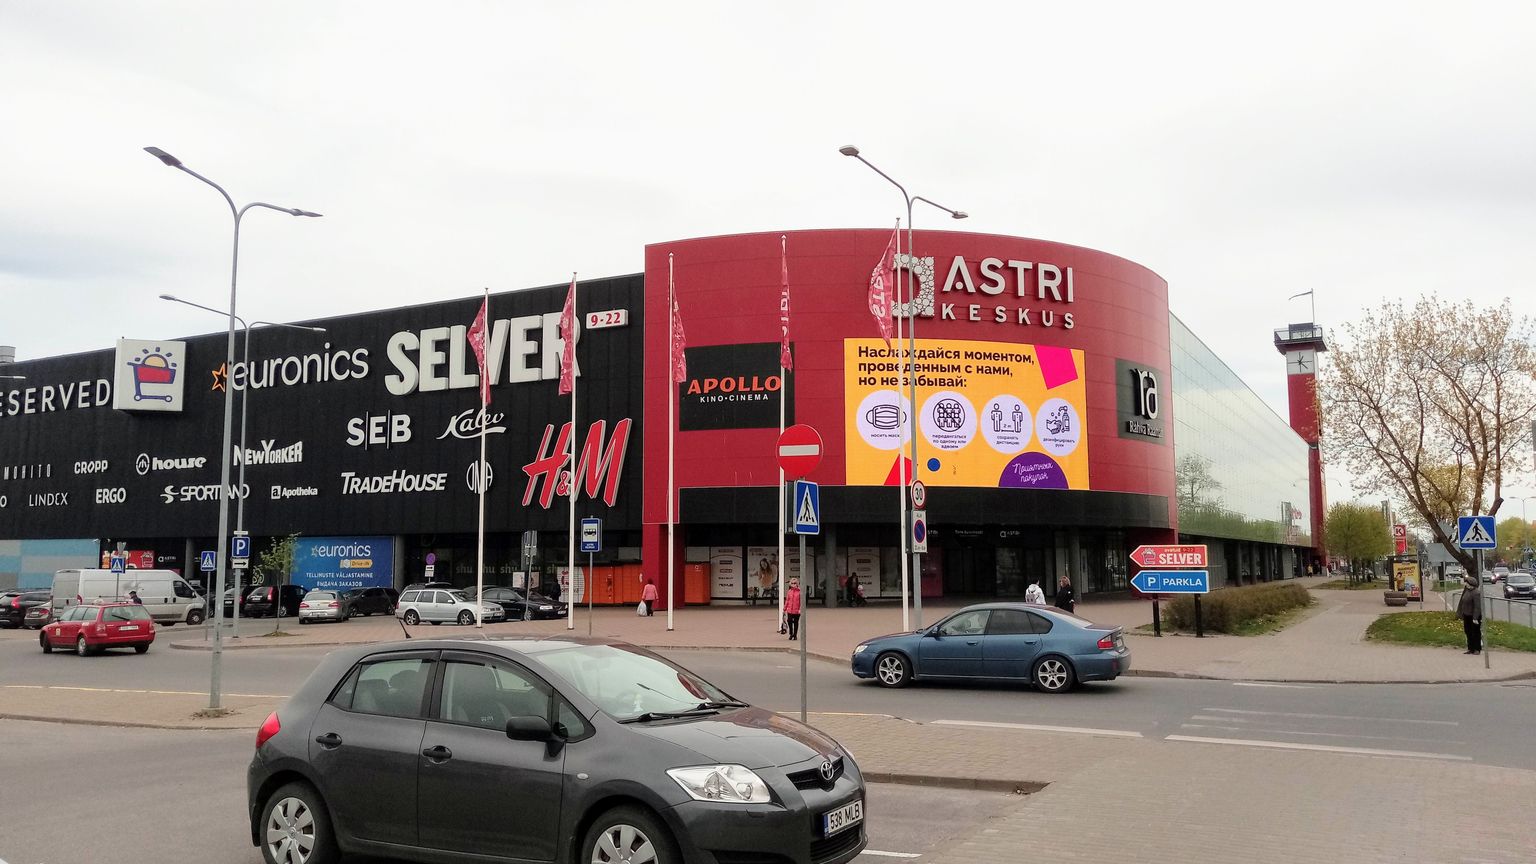 Торговый центр Astri Narva открылся почти полностью, но с помощью экрана посетителей призывают пользоваться масками и соблюдать дистанцию.